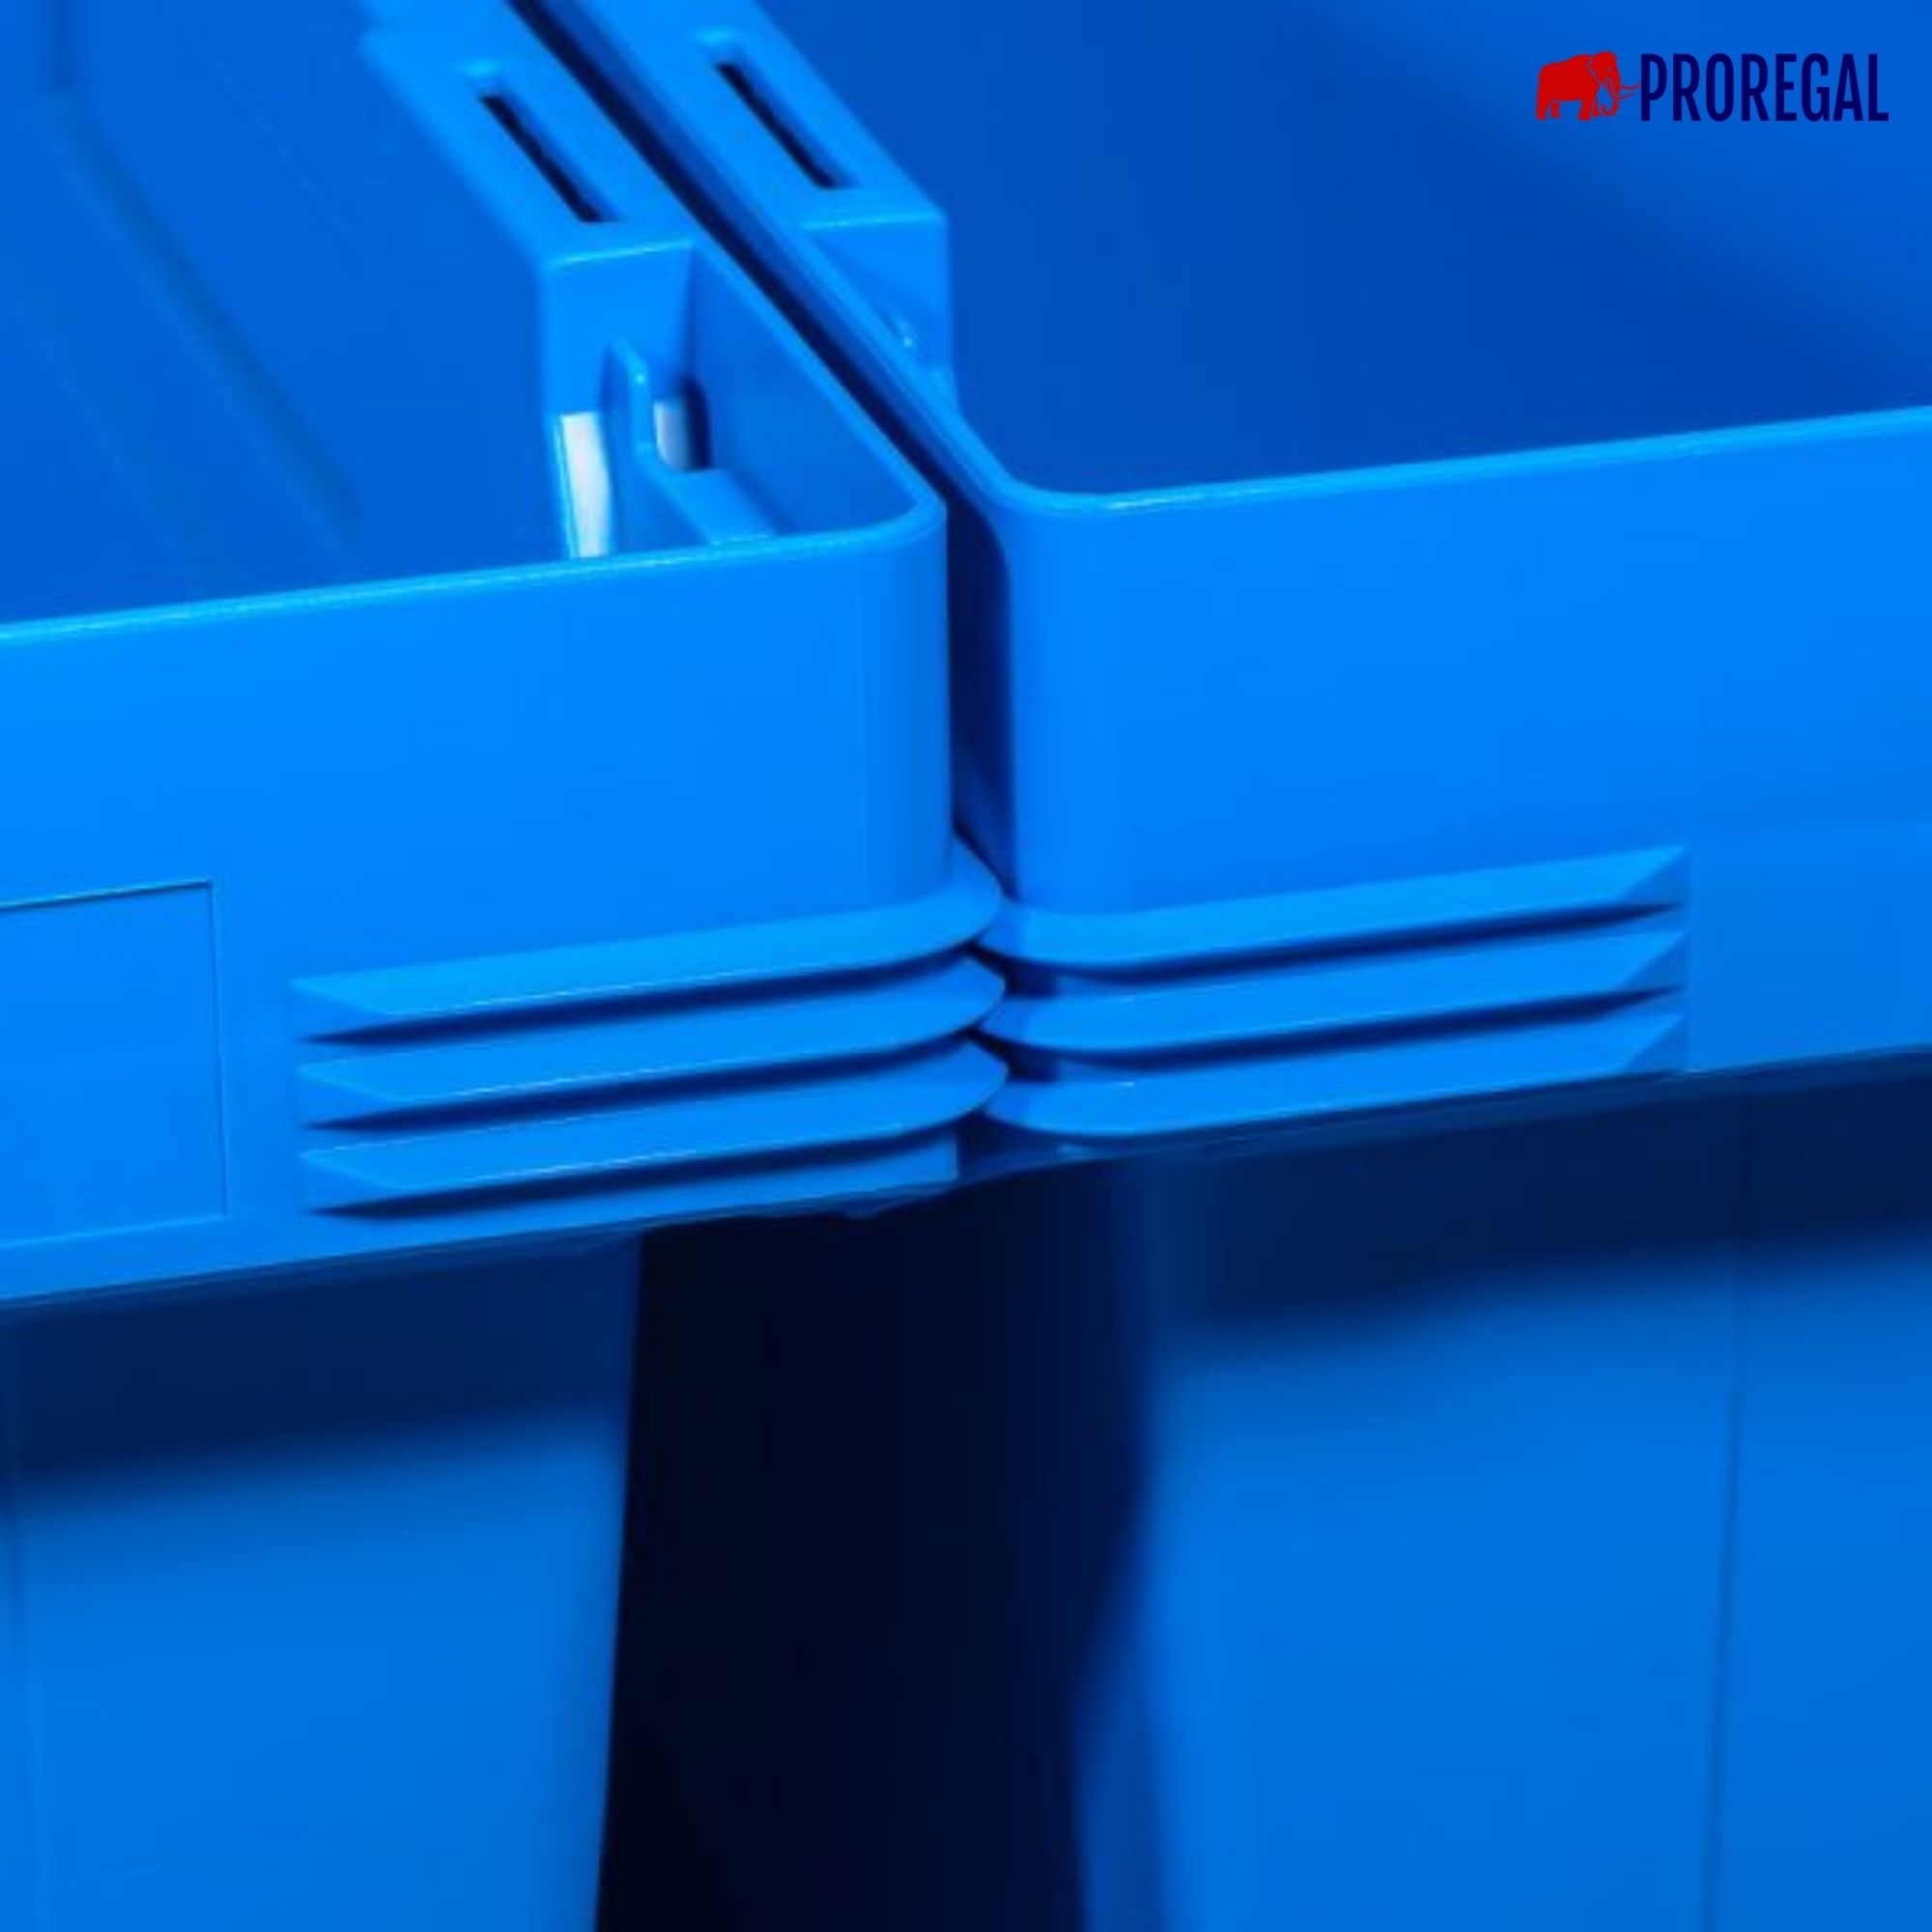 Conical Mehrweg-Stapelbehälter mit Krokodildeckel Blau | HxBxT 34,9x41x61cm | 58 Liter | Lagerbox Eurobox Transportbox Transportbehälter Stapelbehälter